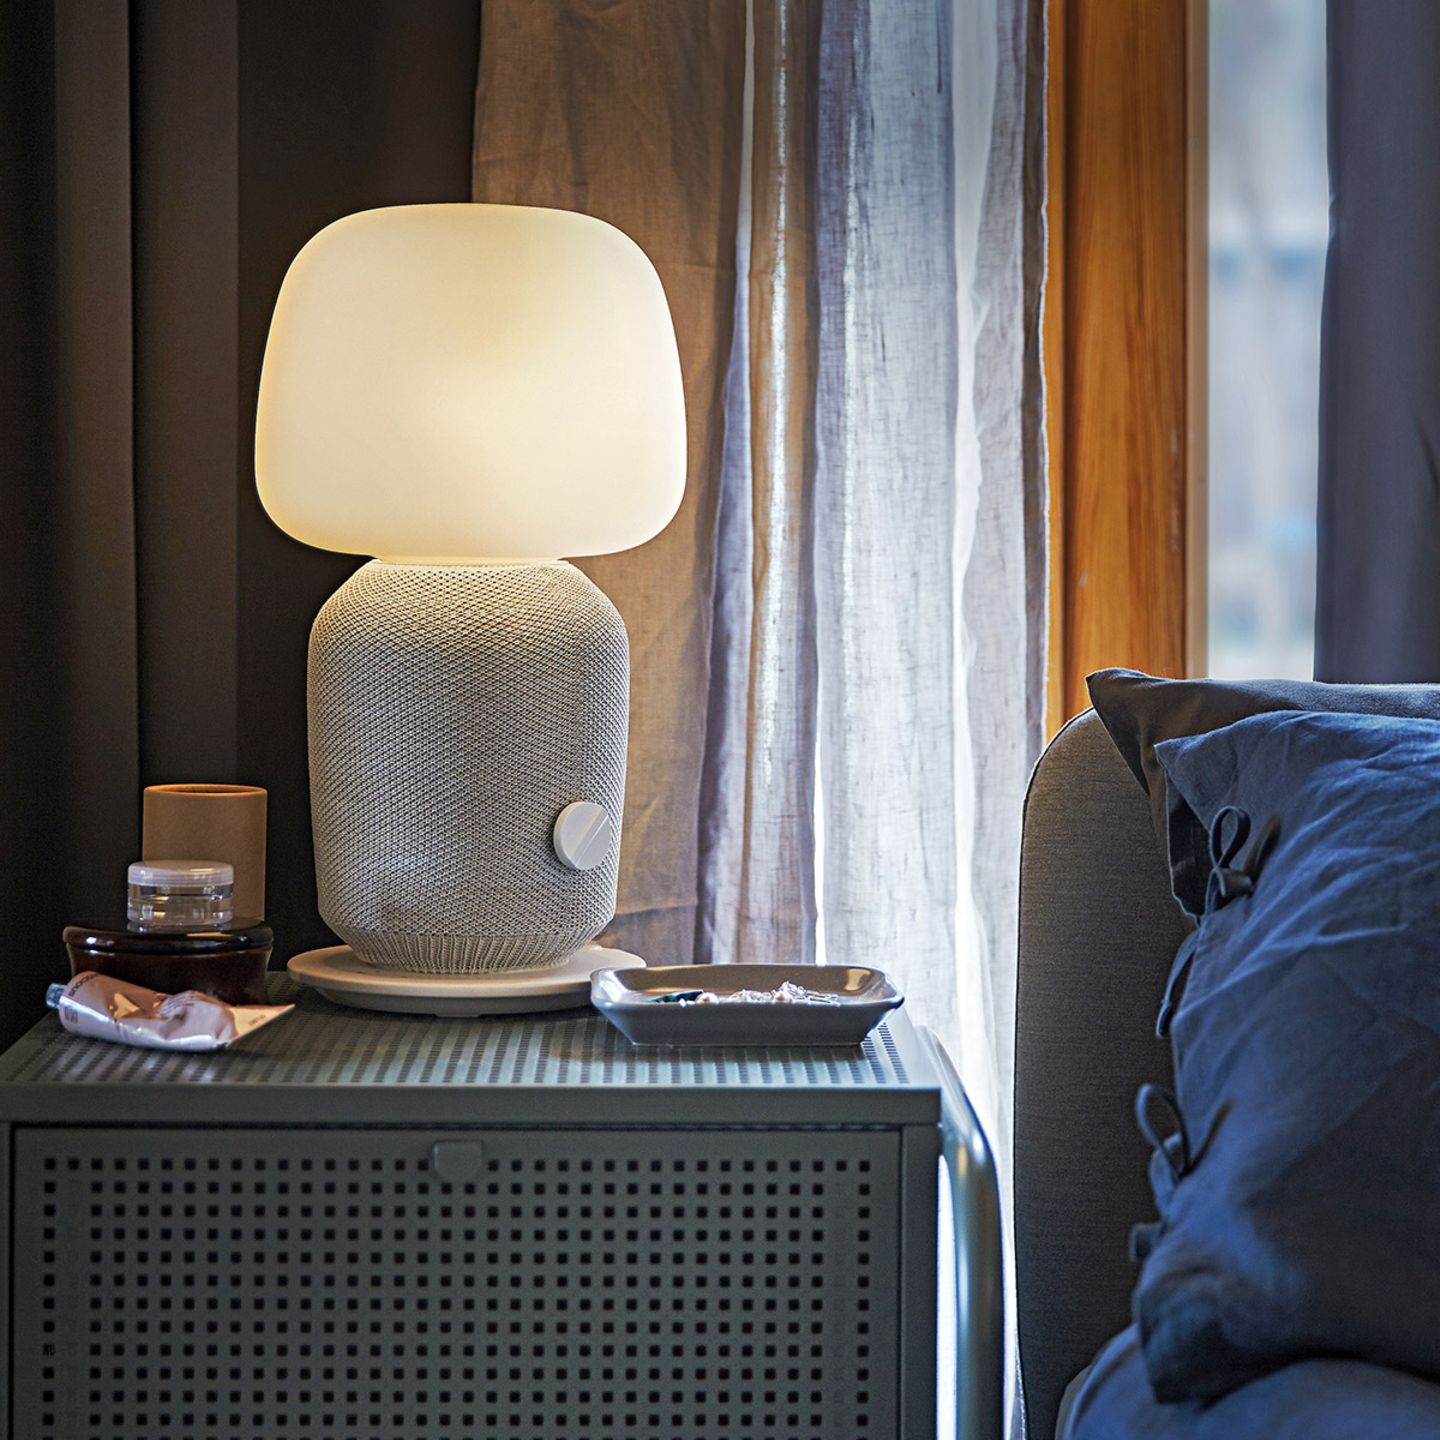 Tischleuchte "Symfonisk" von Ikea mit WiFi auf einem Nachttisch neben einem Bett